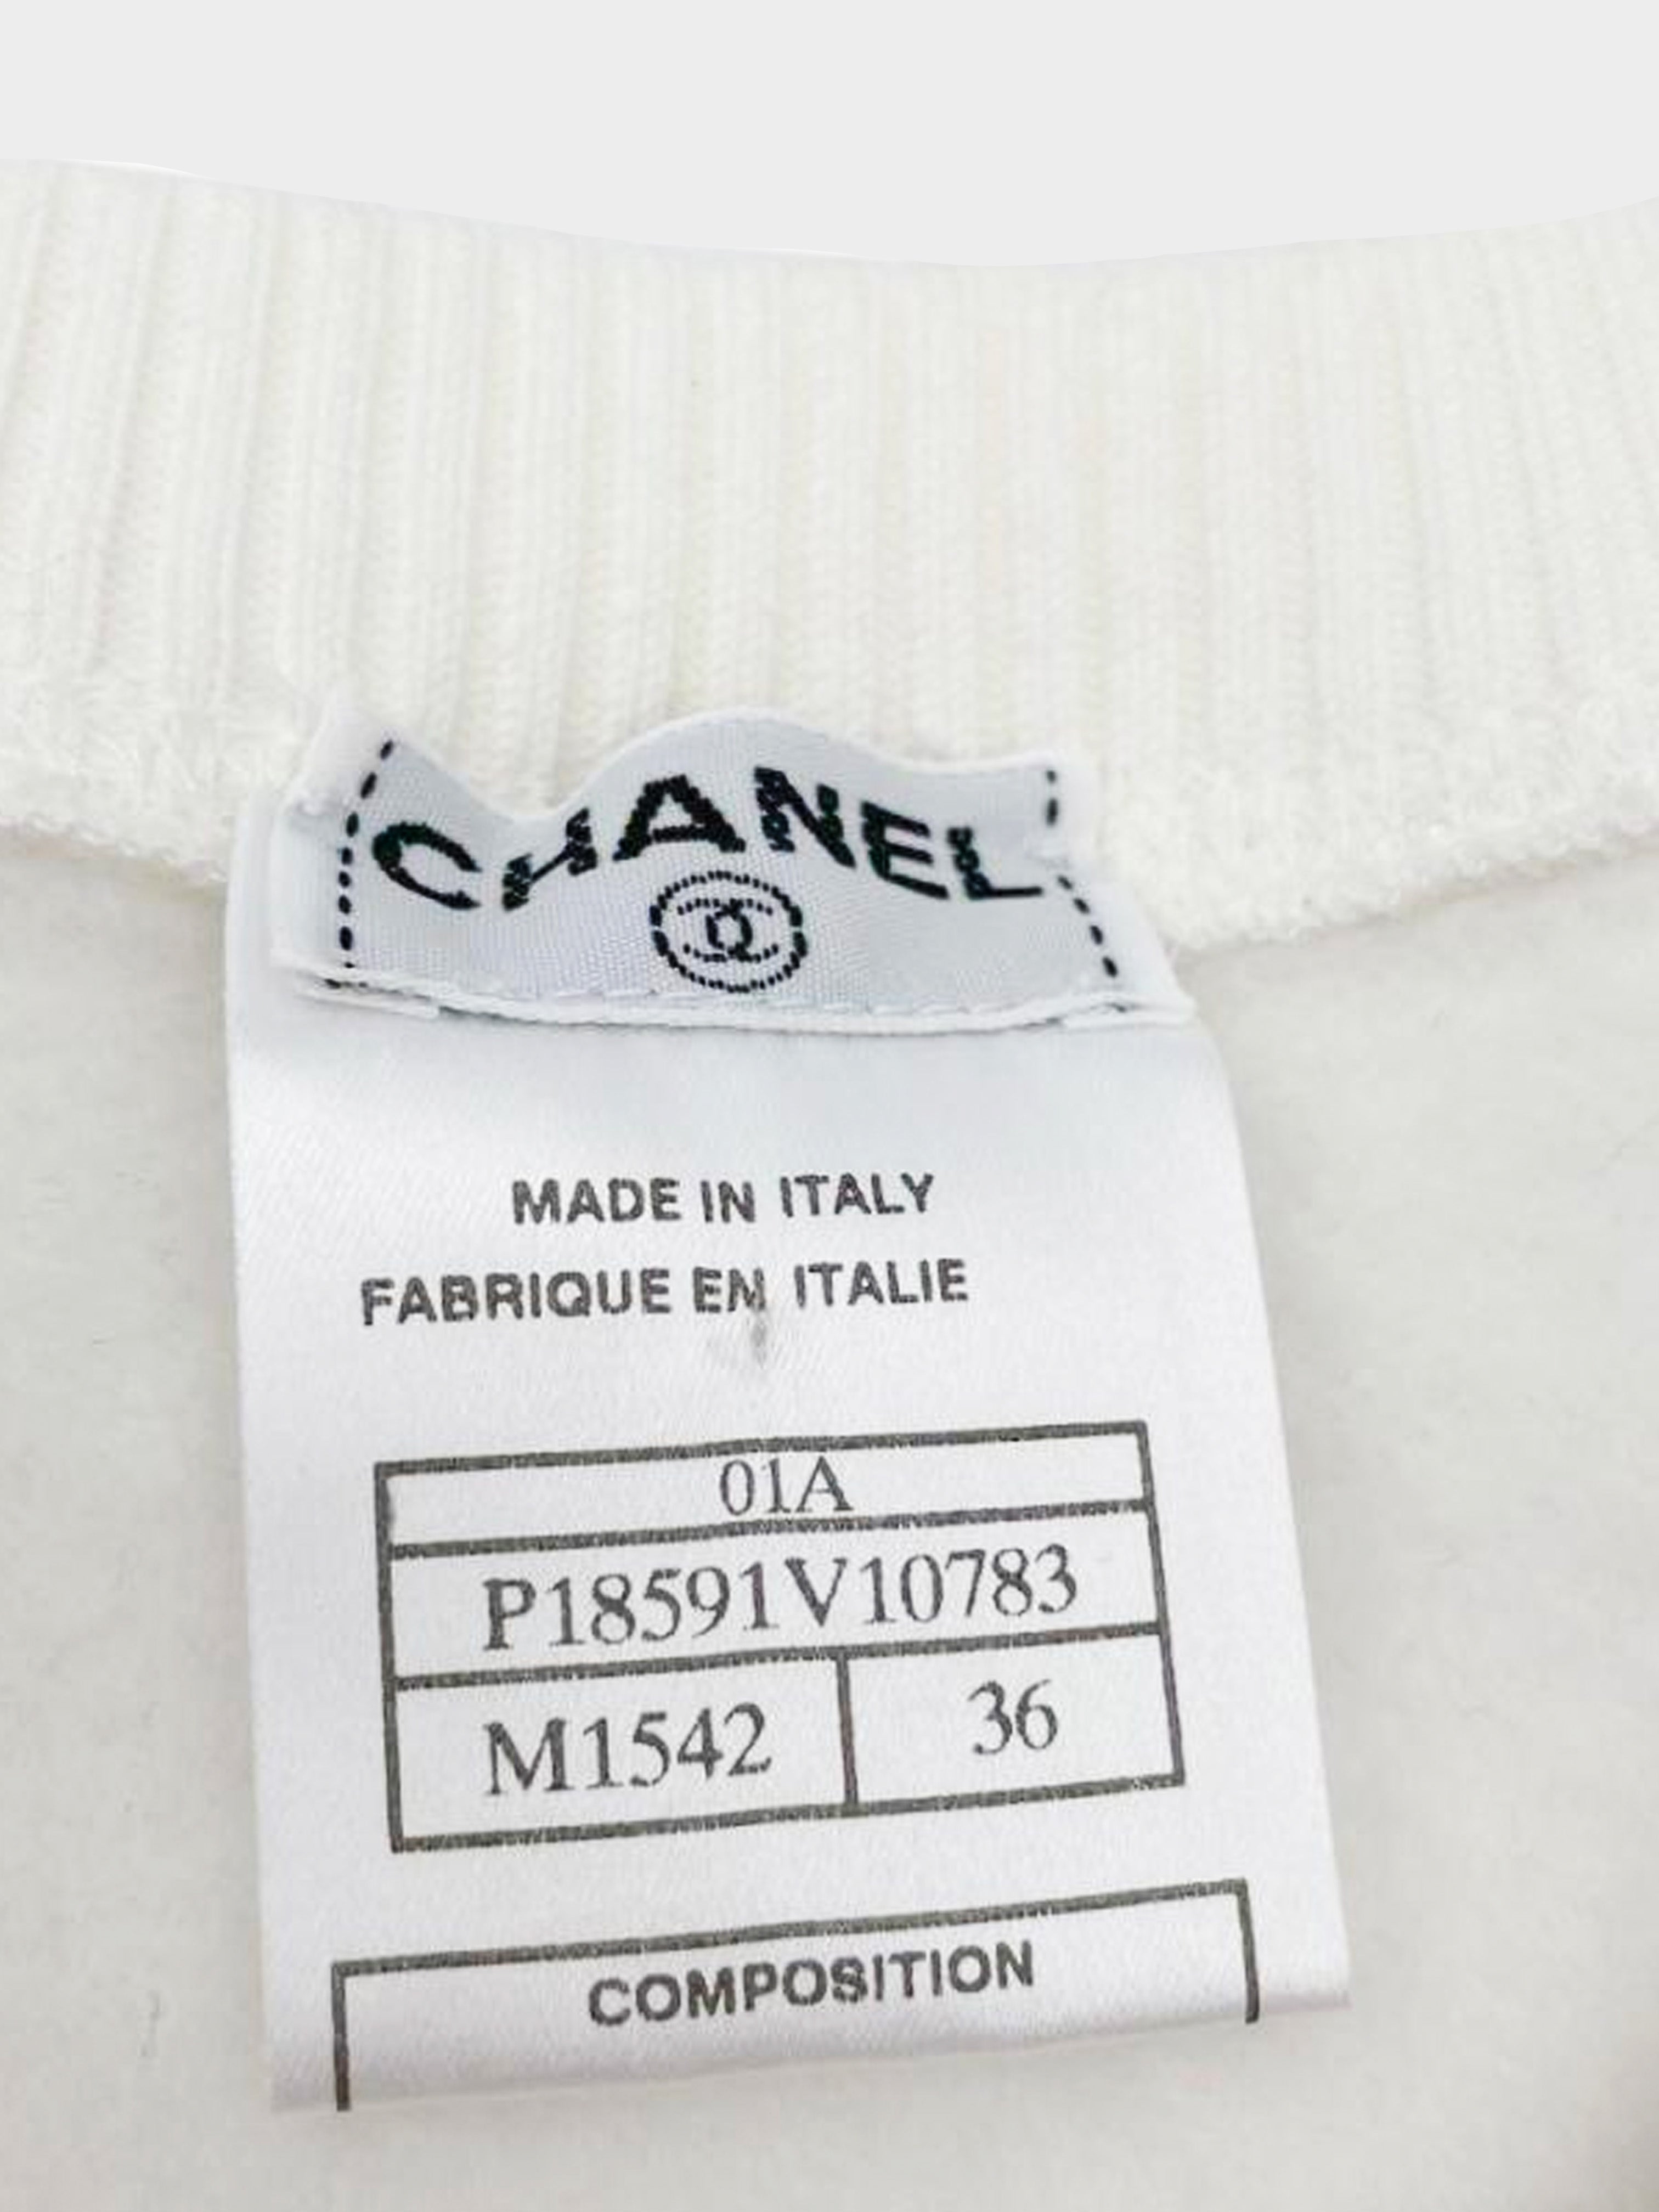 Chanel AW 2001 Mademoiselle N°5 Sweatshirt